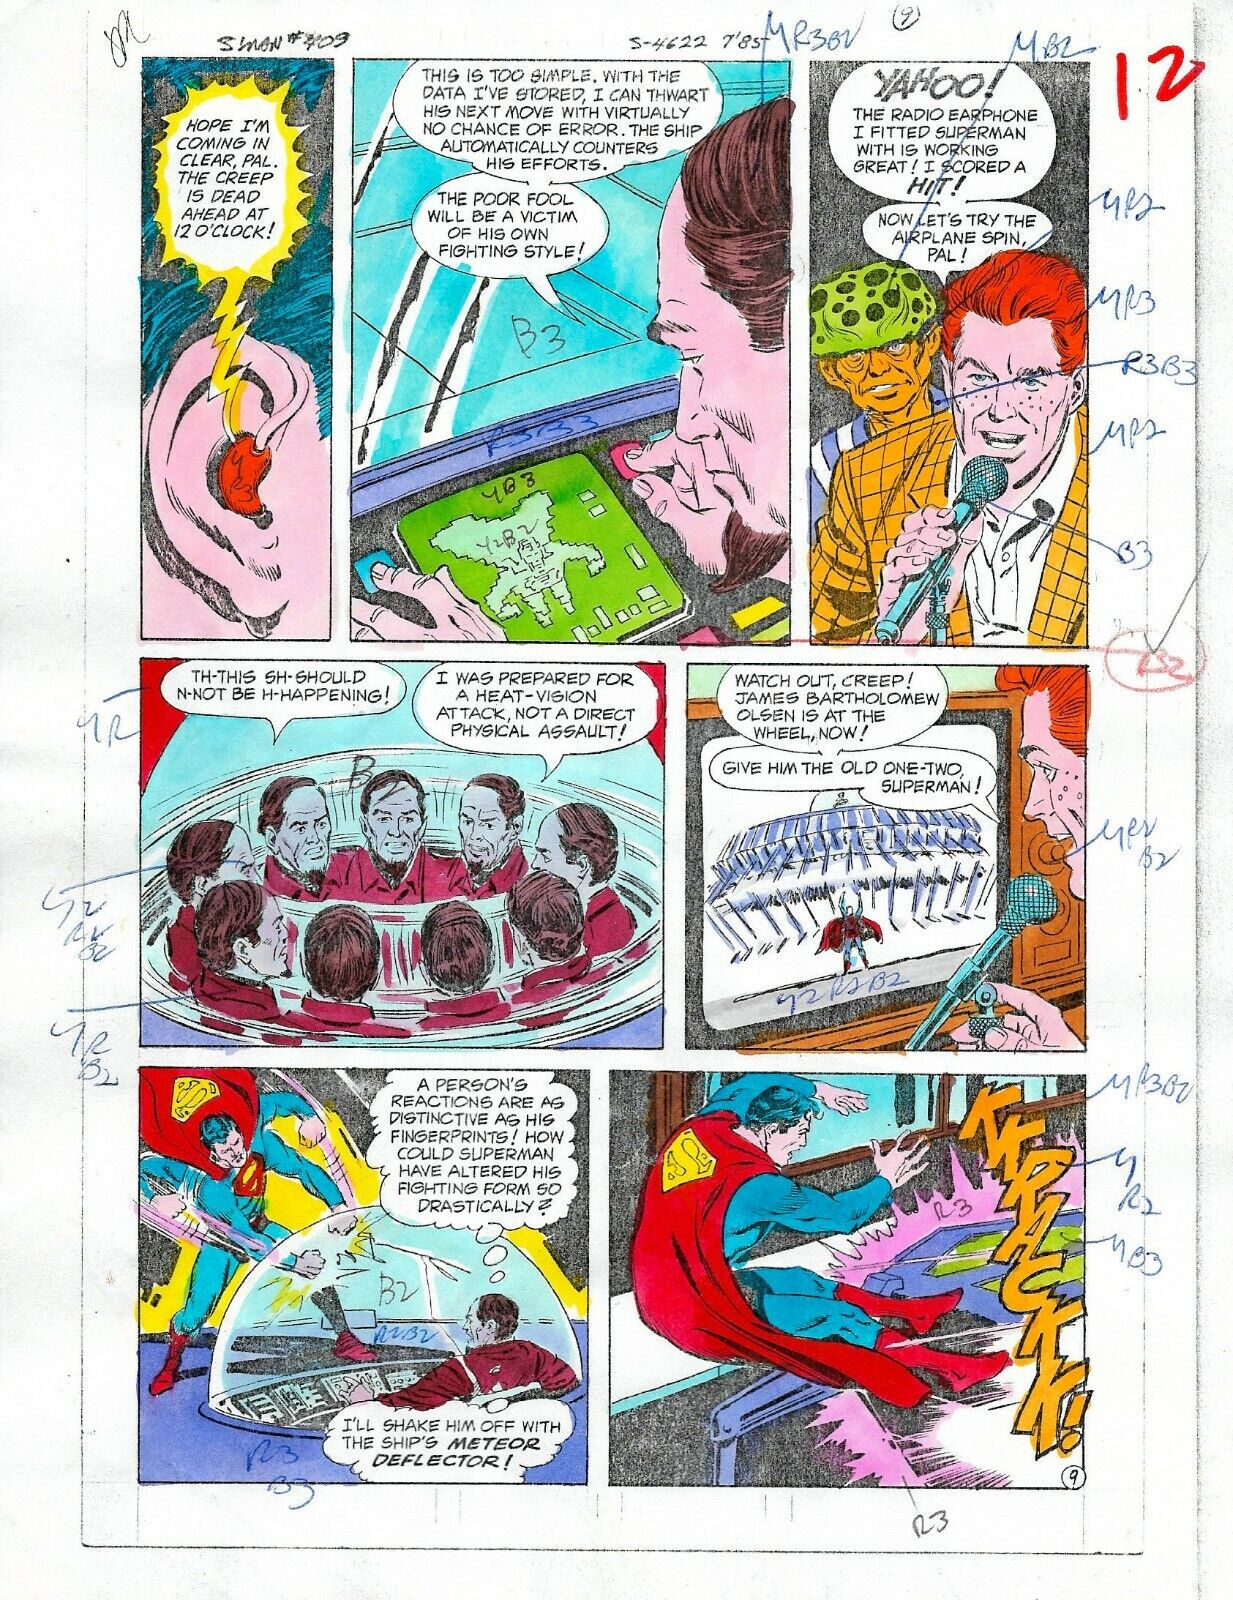 Original 1985 Superman 409 page 12 DC Comics color guide art colorist\'s artwork